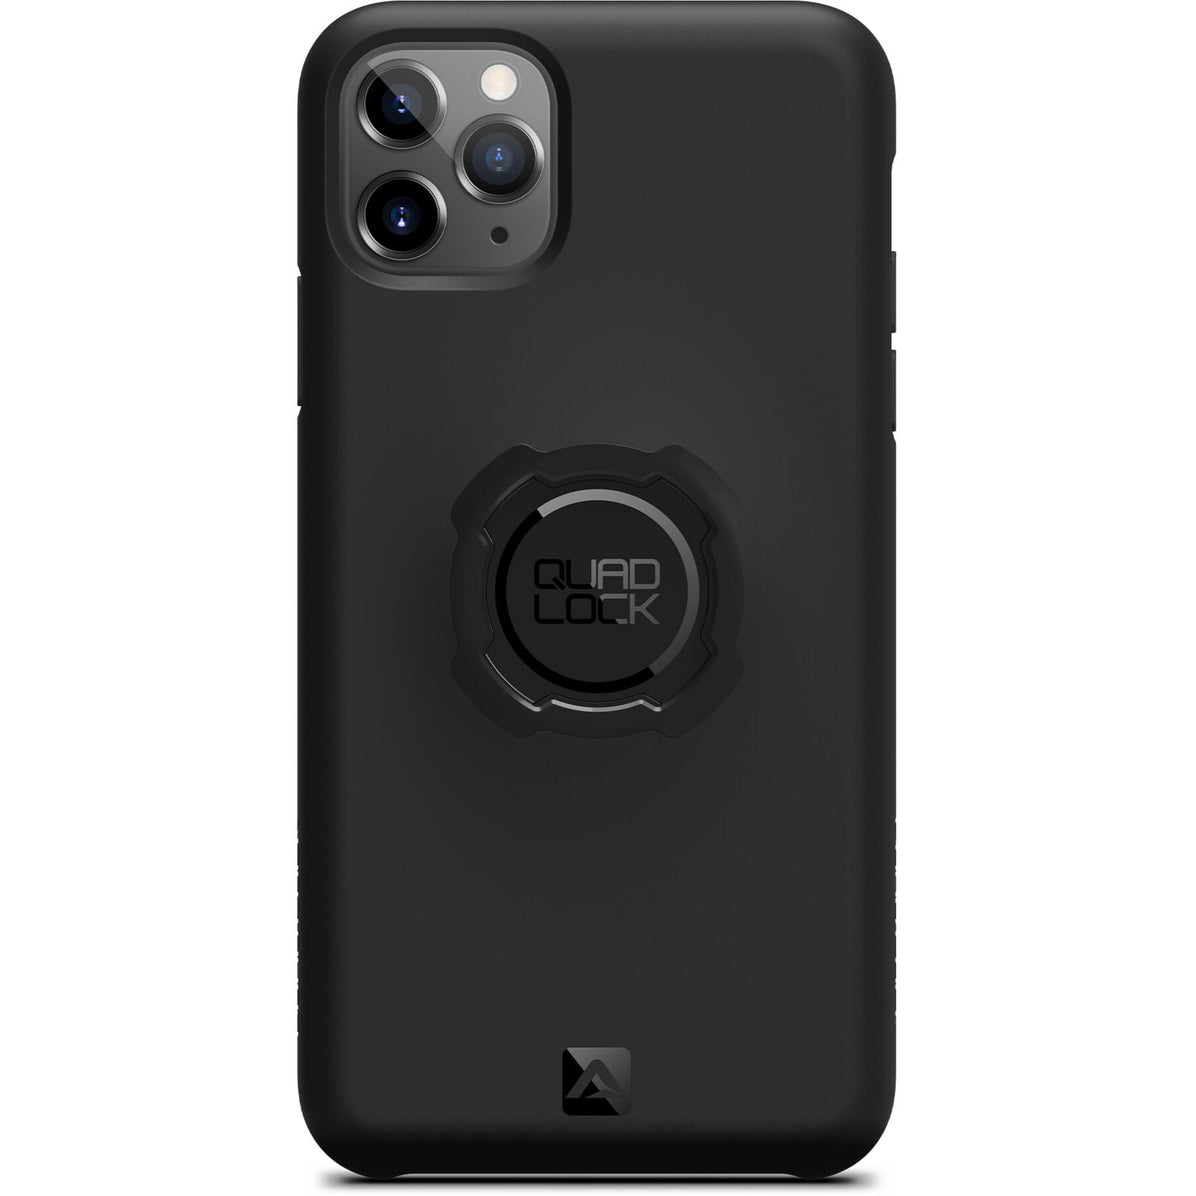 Quad Lock Original Case - iPhone 11 Pro Max